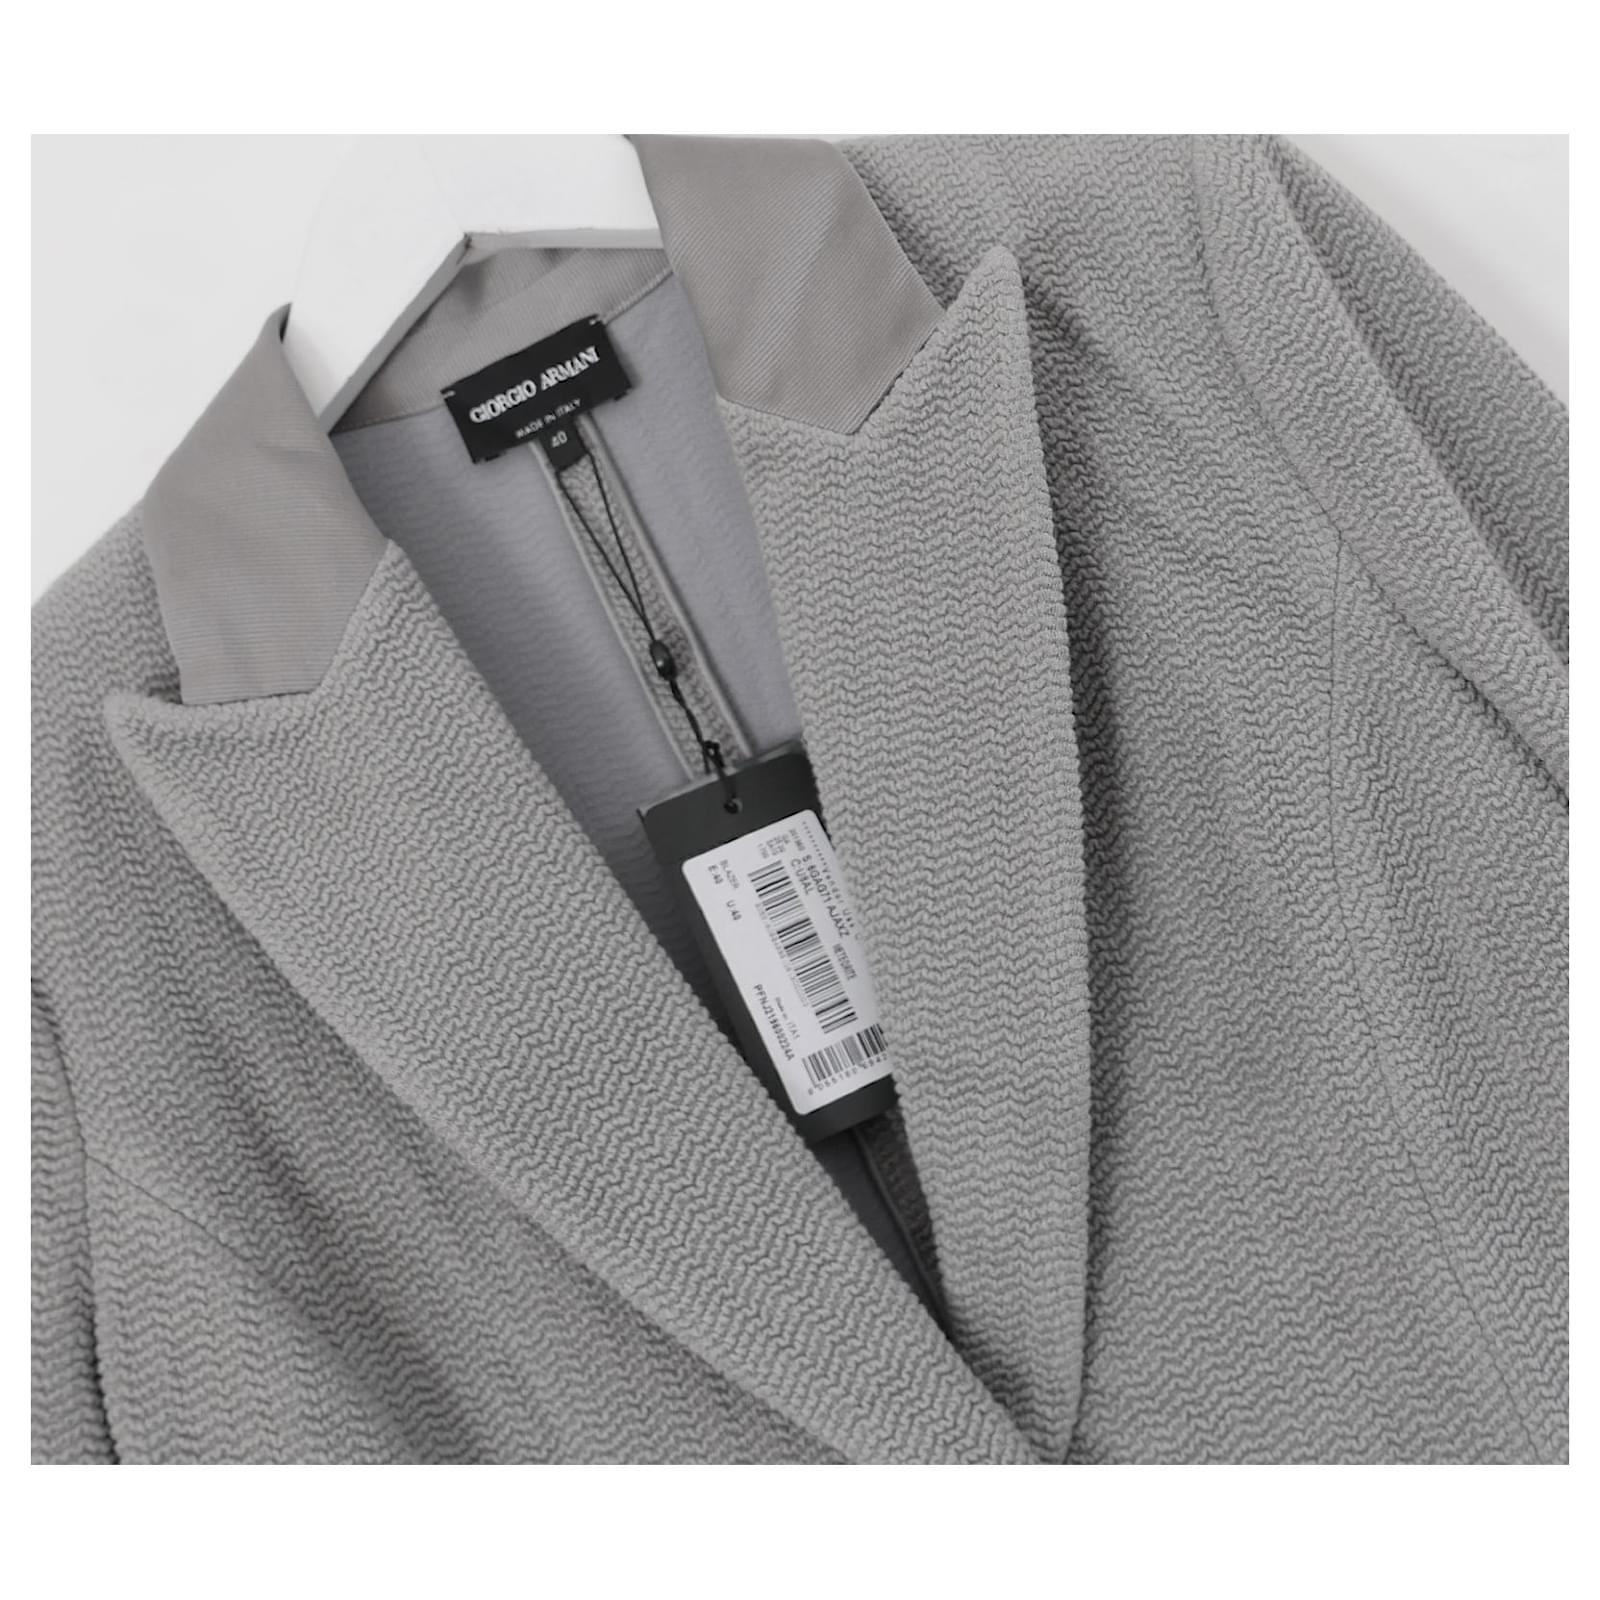 Magnifique veste blazer Giorgio Armani, achetée pour £1600 et neuve avec étiquettes/carte d'authenticité. Réalisé en mélange de viscose texturée et froissée avec des bordures en satin gros grain. Superbement taillé avec des épaules paddées, un léger